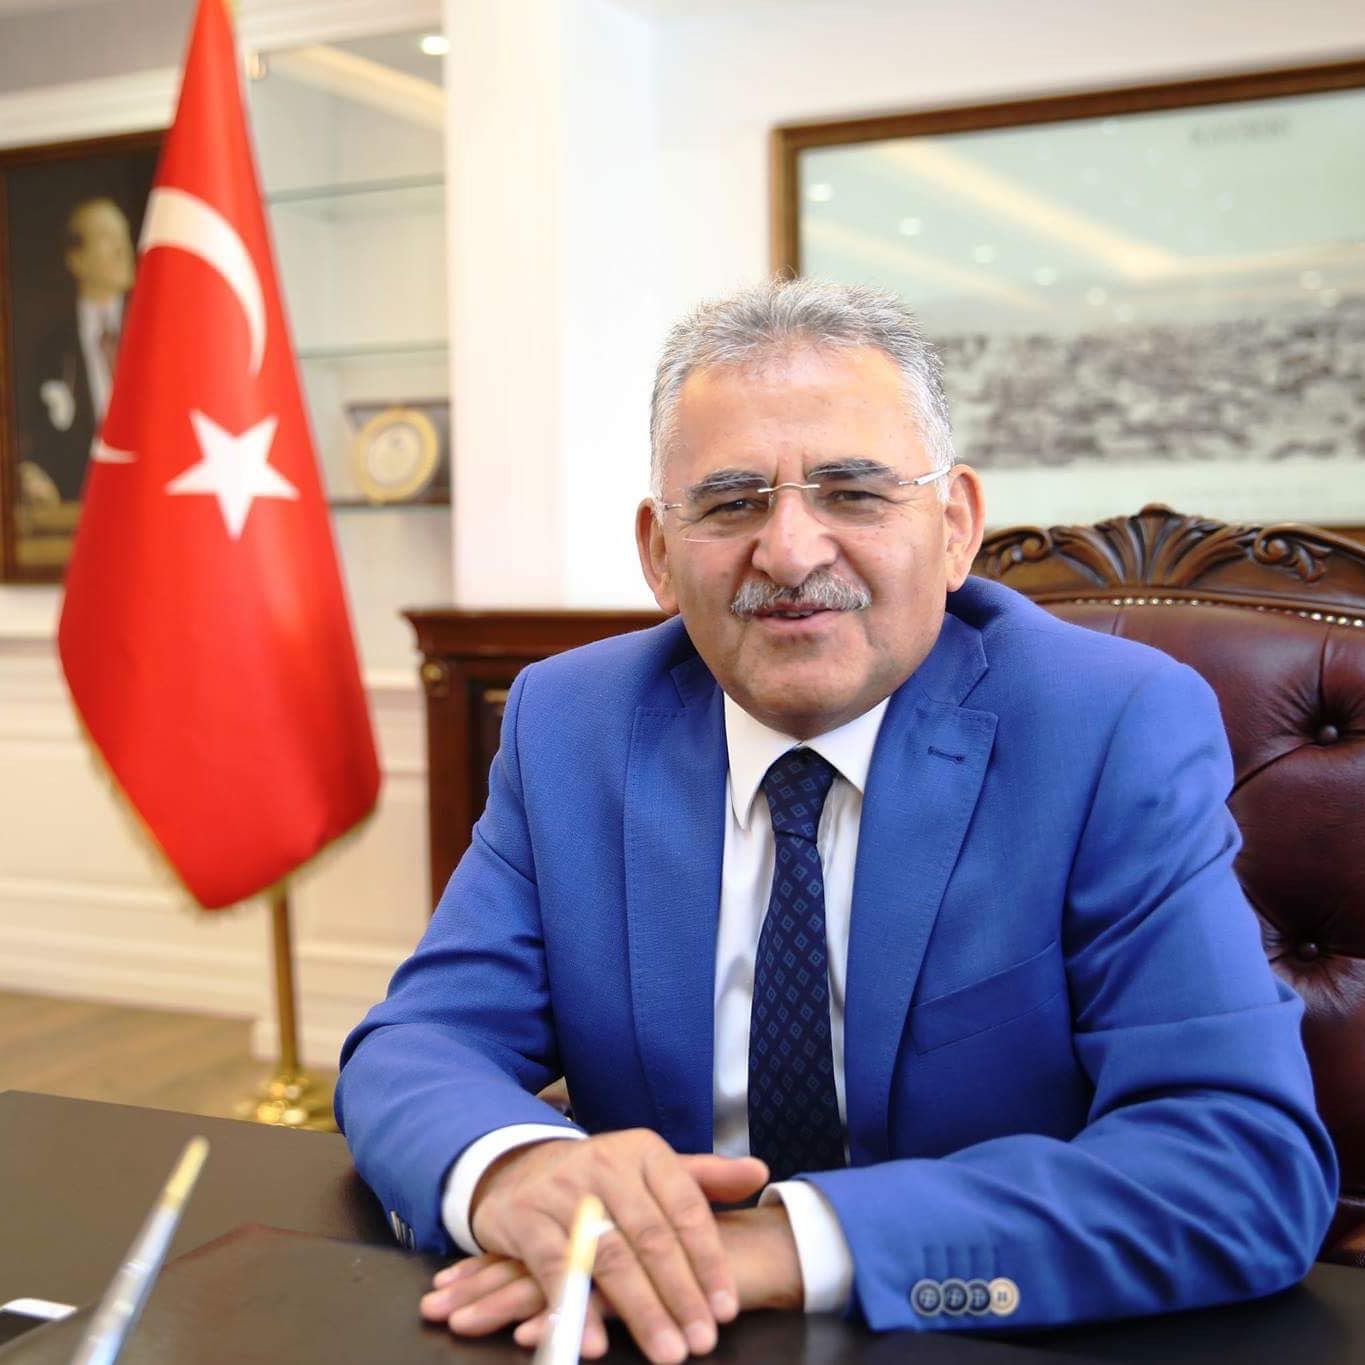 Kayseri Büyükşehir Belediye Başkanı korona oldu